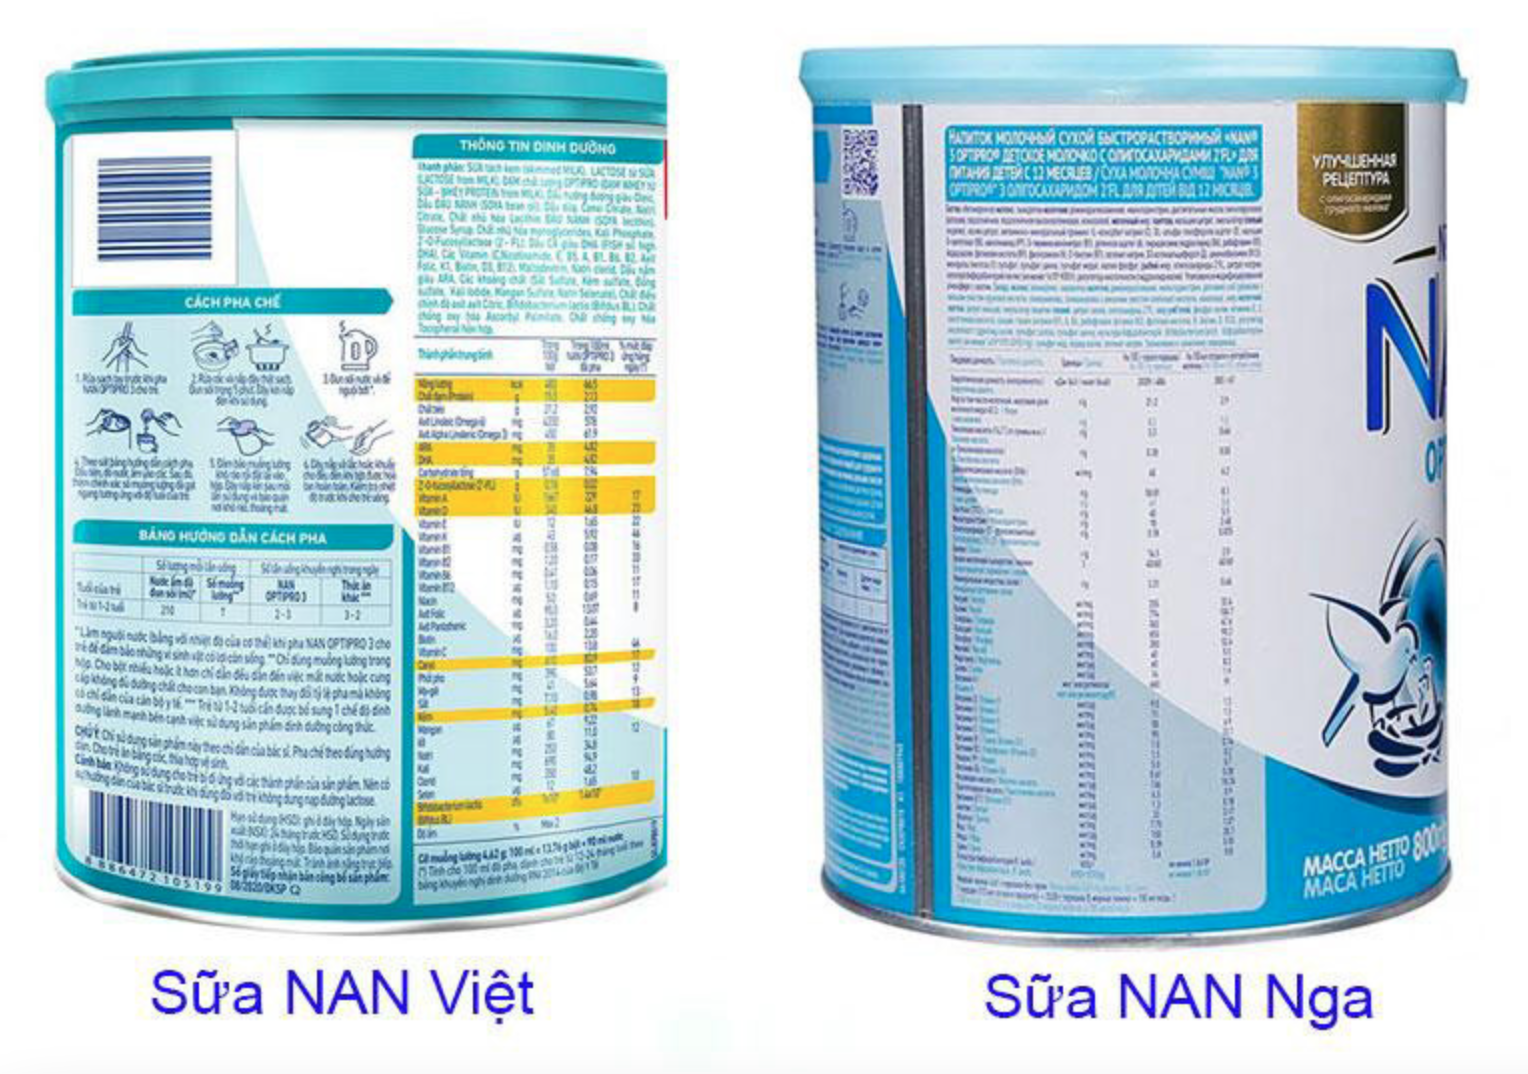 Bảng thành phần của Nan Nga và Việt khá tương đồng về dưỡng chất